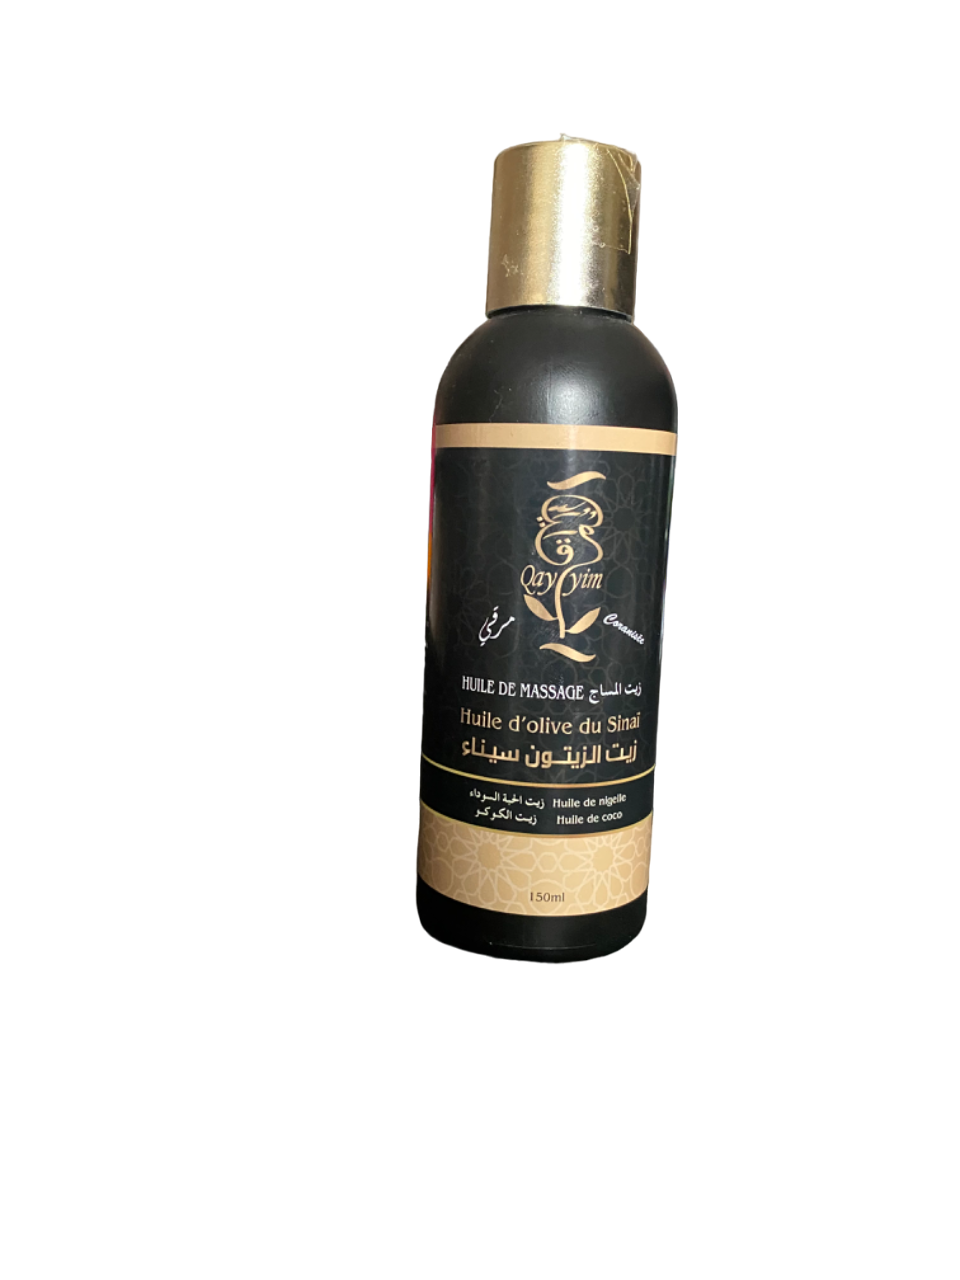 Huile de massage coranisée - 150ml - huile d’olive du Sinaï, huile de coco - roqya, désenvoutement, sorcellerie, mauvais œil, déblocage